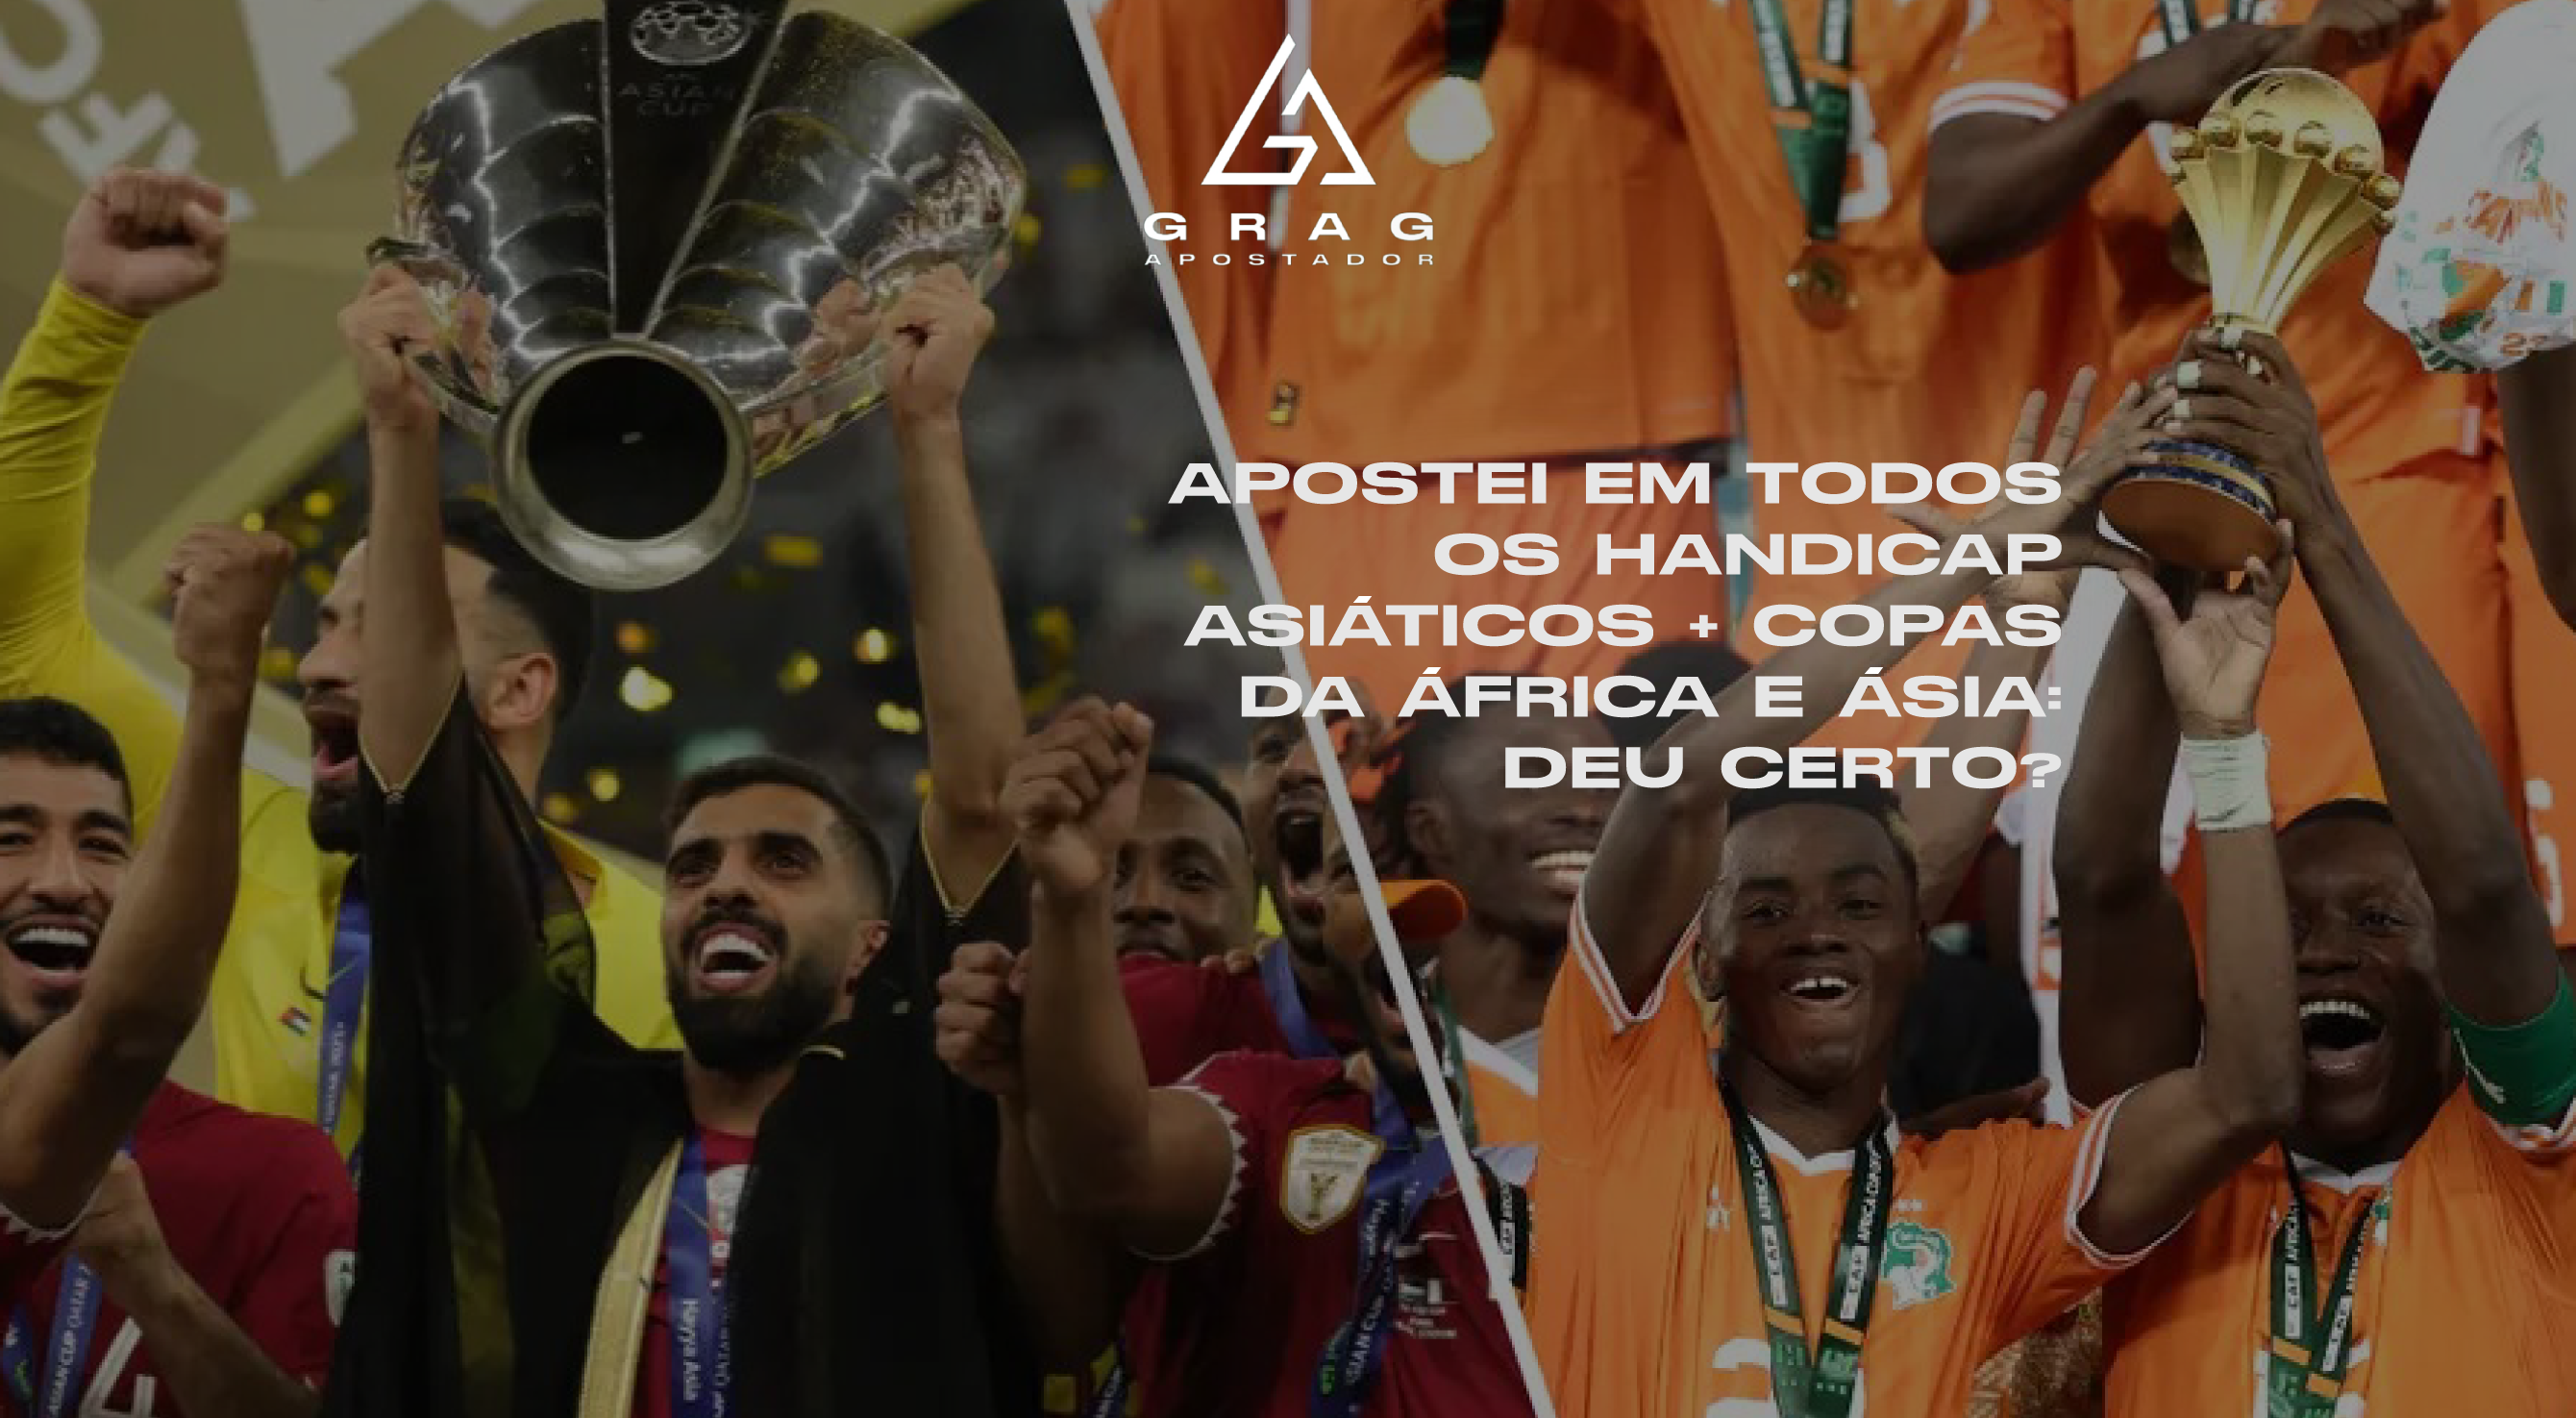 Apostei em todos os Handicap Asiáticos + das Copas da África e Ásia: deu certo?